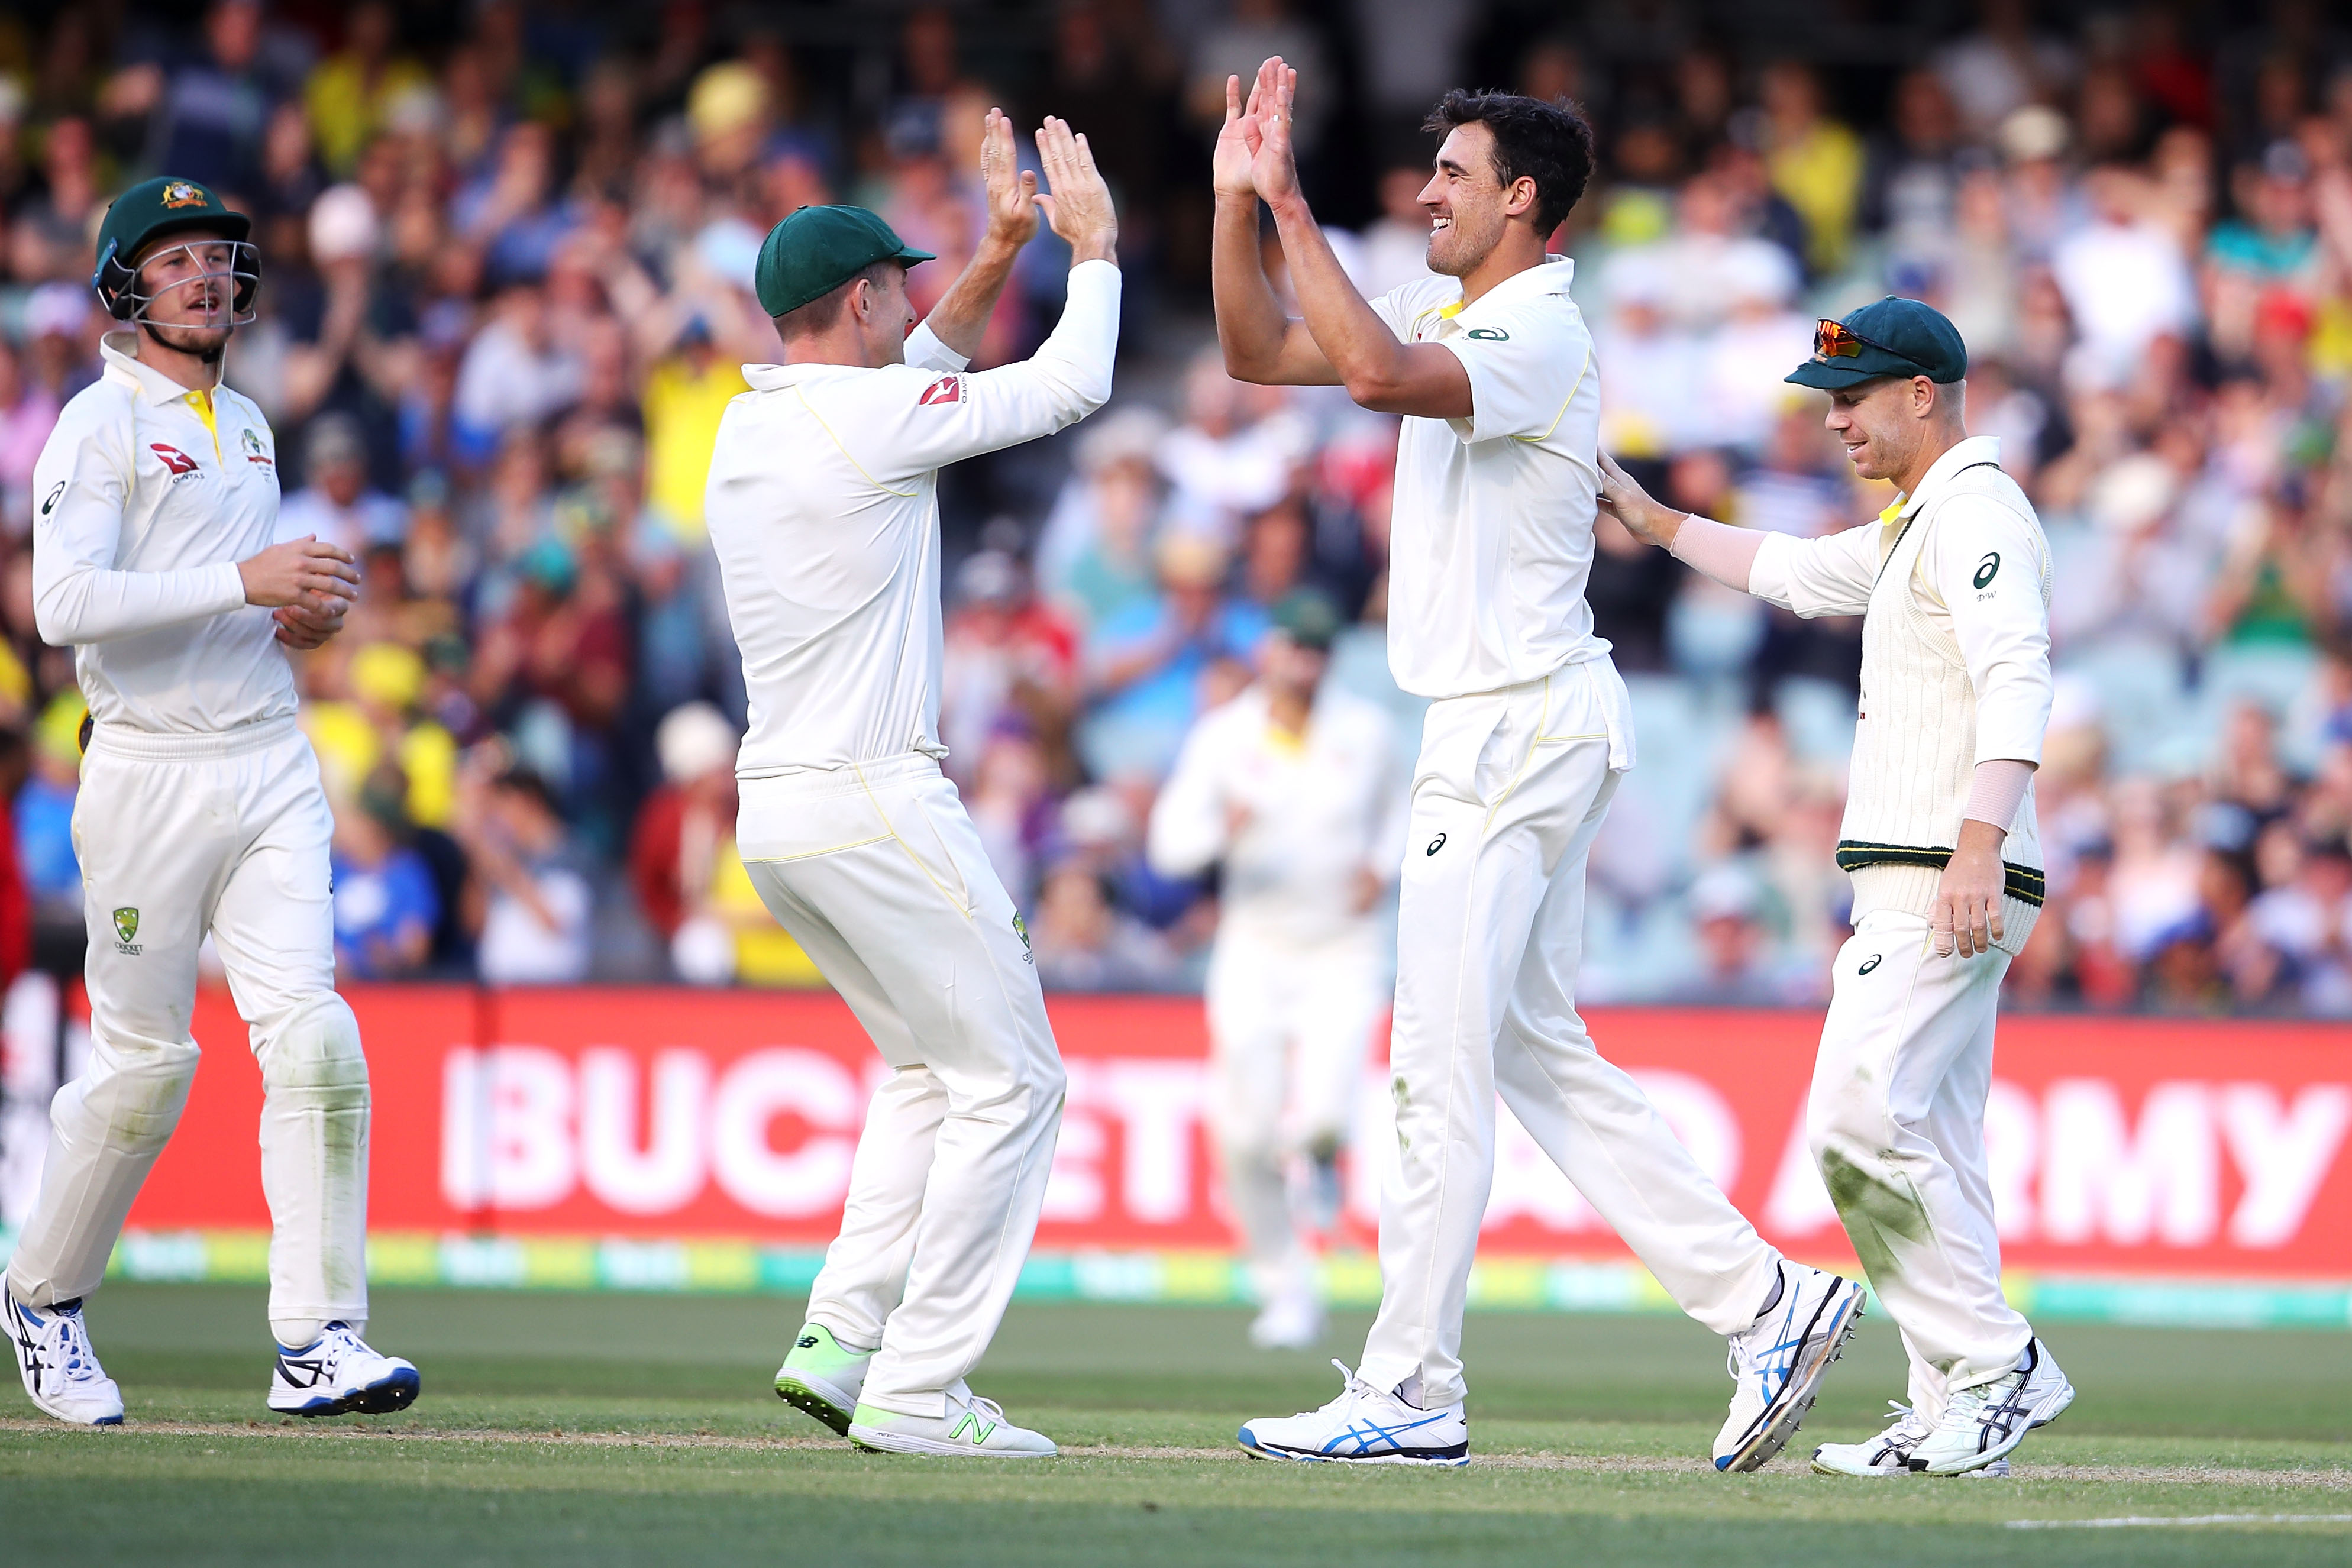 India vs Australia | Australians know how to bowl to Virat Kohli, claims John Buchanan